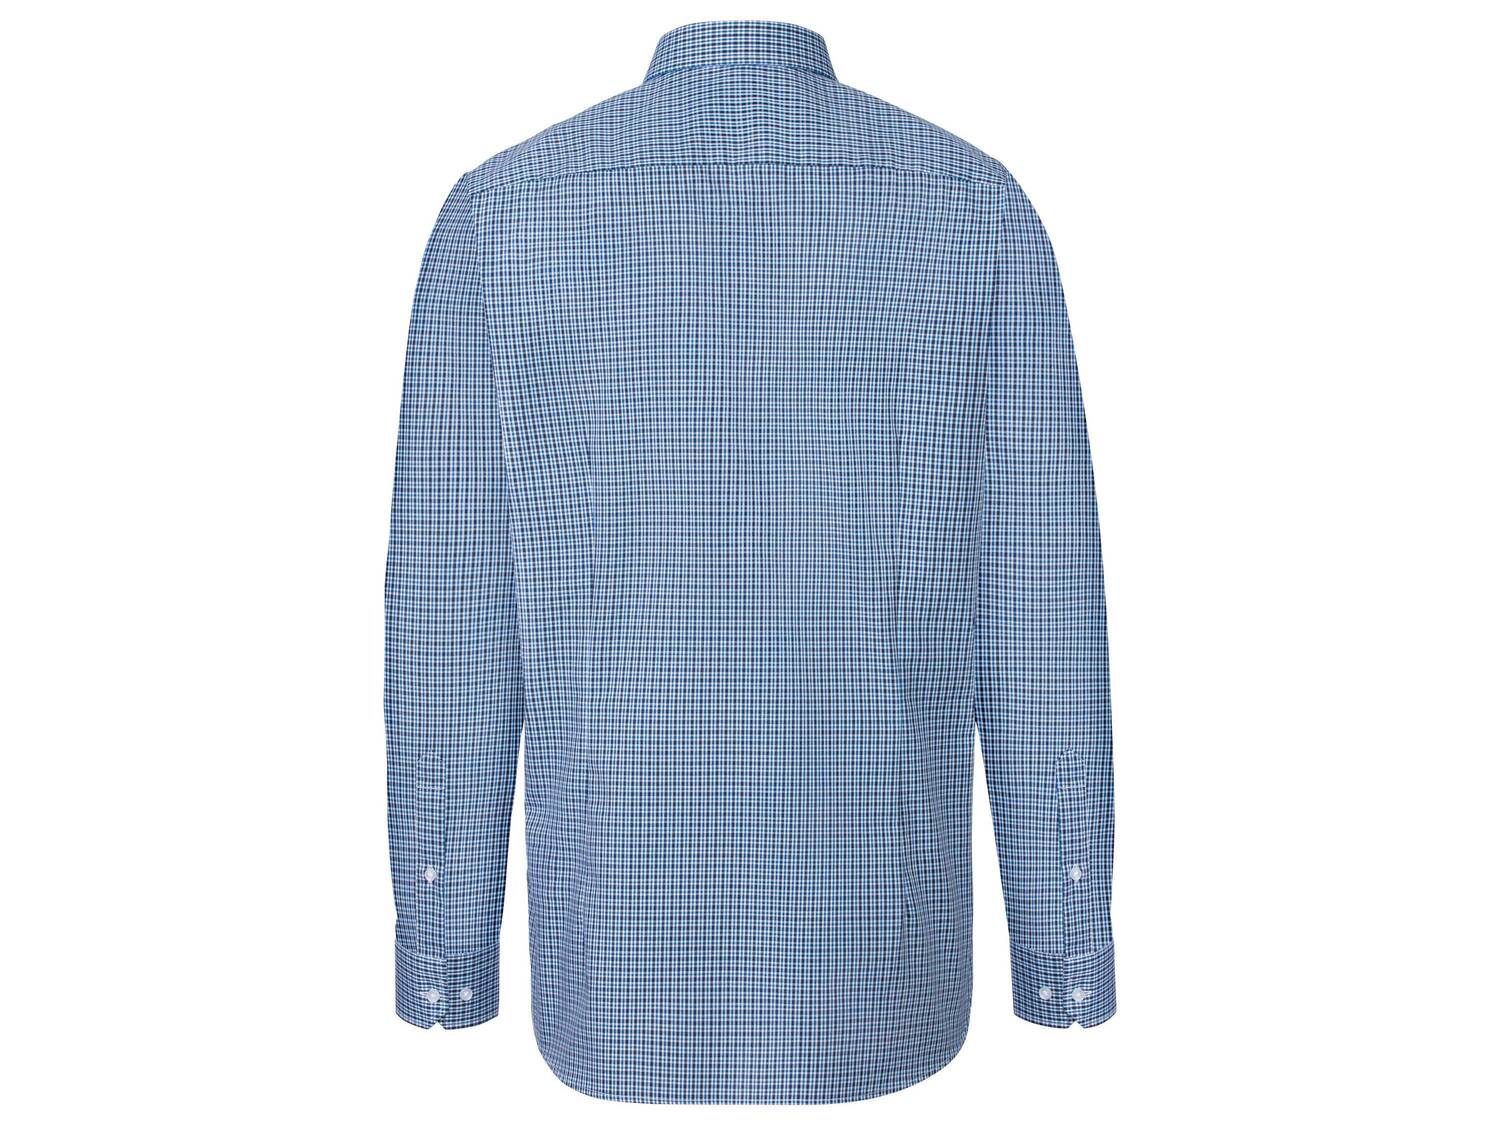 Koszula męska biznesowa , cena 44,99 PLN 
- rozmiary: 39-44
- SLIM FIT
- niewymagająca ...